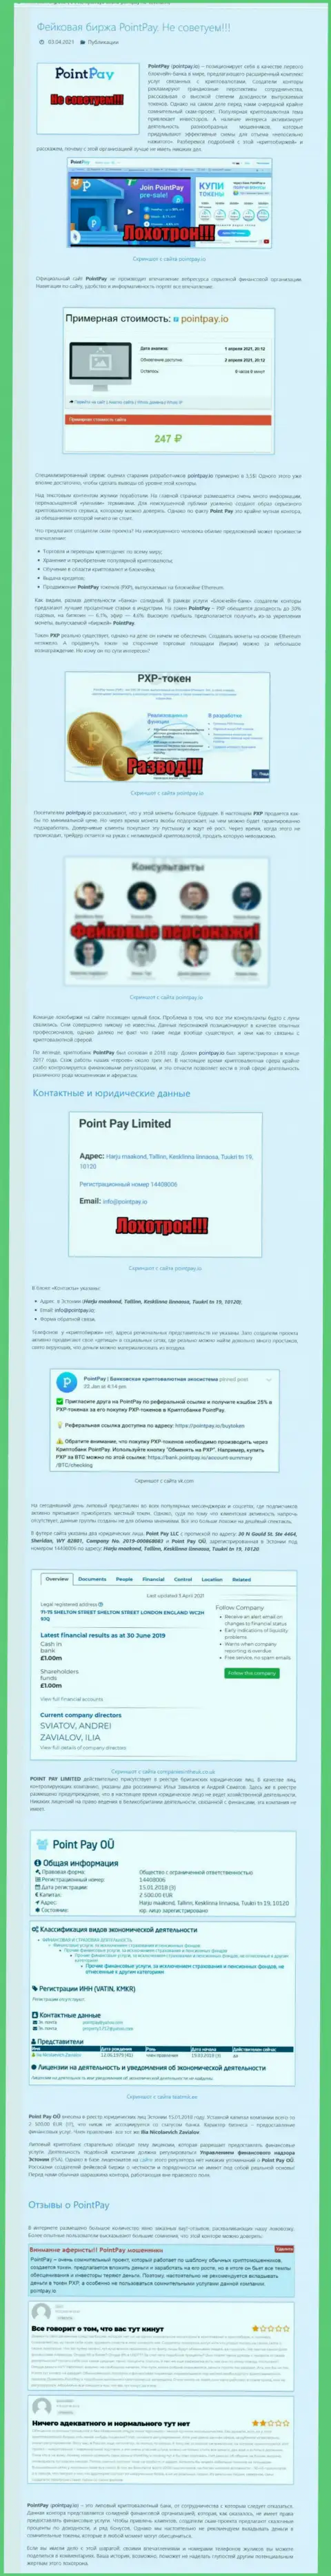 Публикация о жульнических условиях совместной работы в компании PointPay